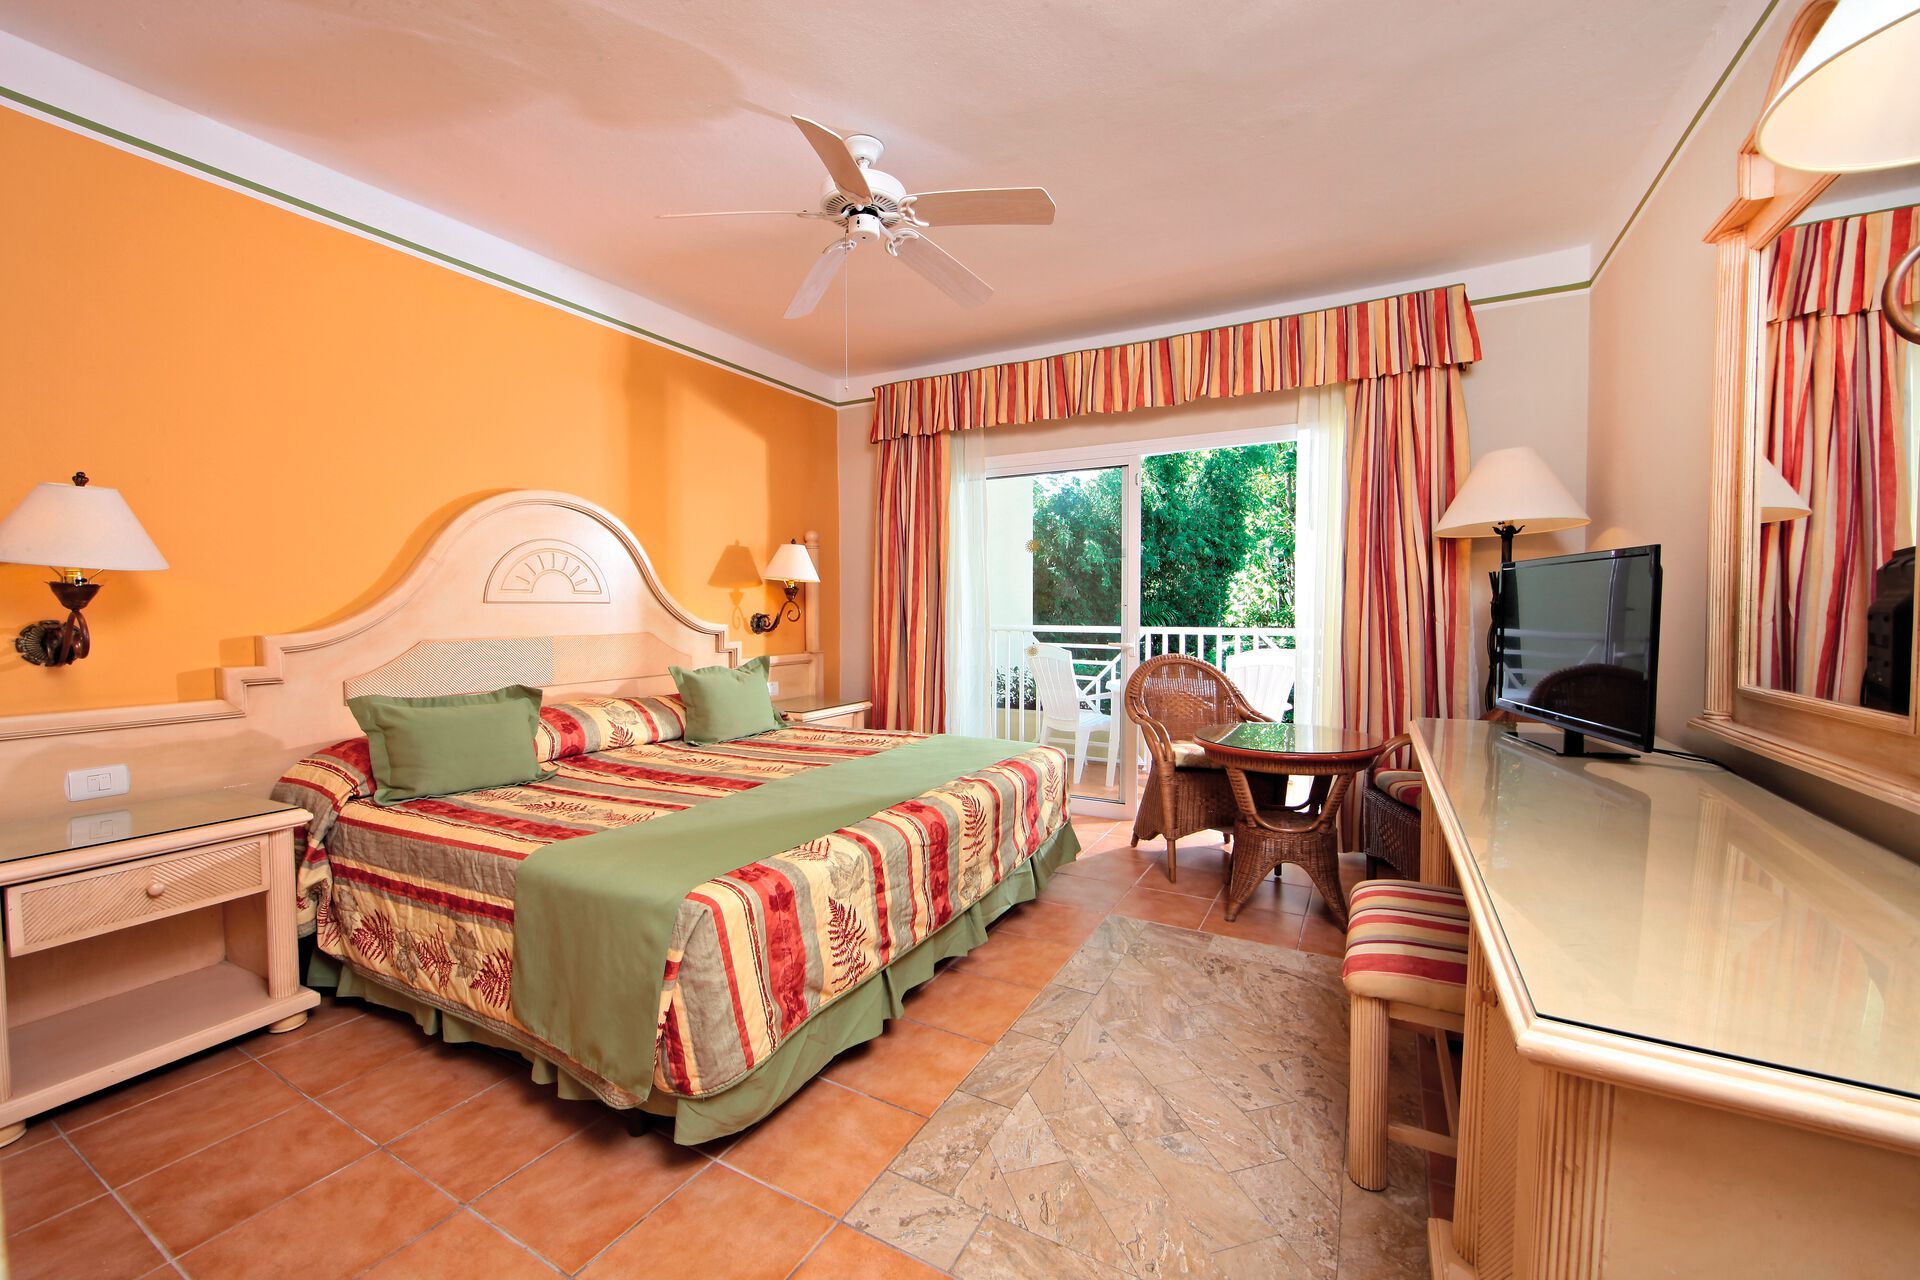 République Dominicaine - Las Terrenas - Hotel Bahia Principe Grand El Portillo 4*